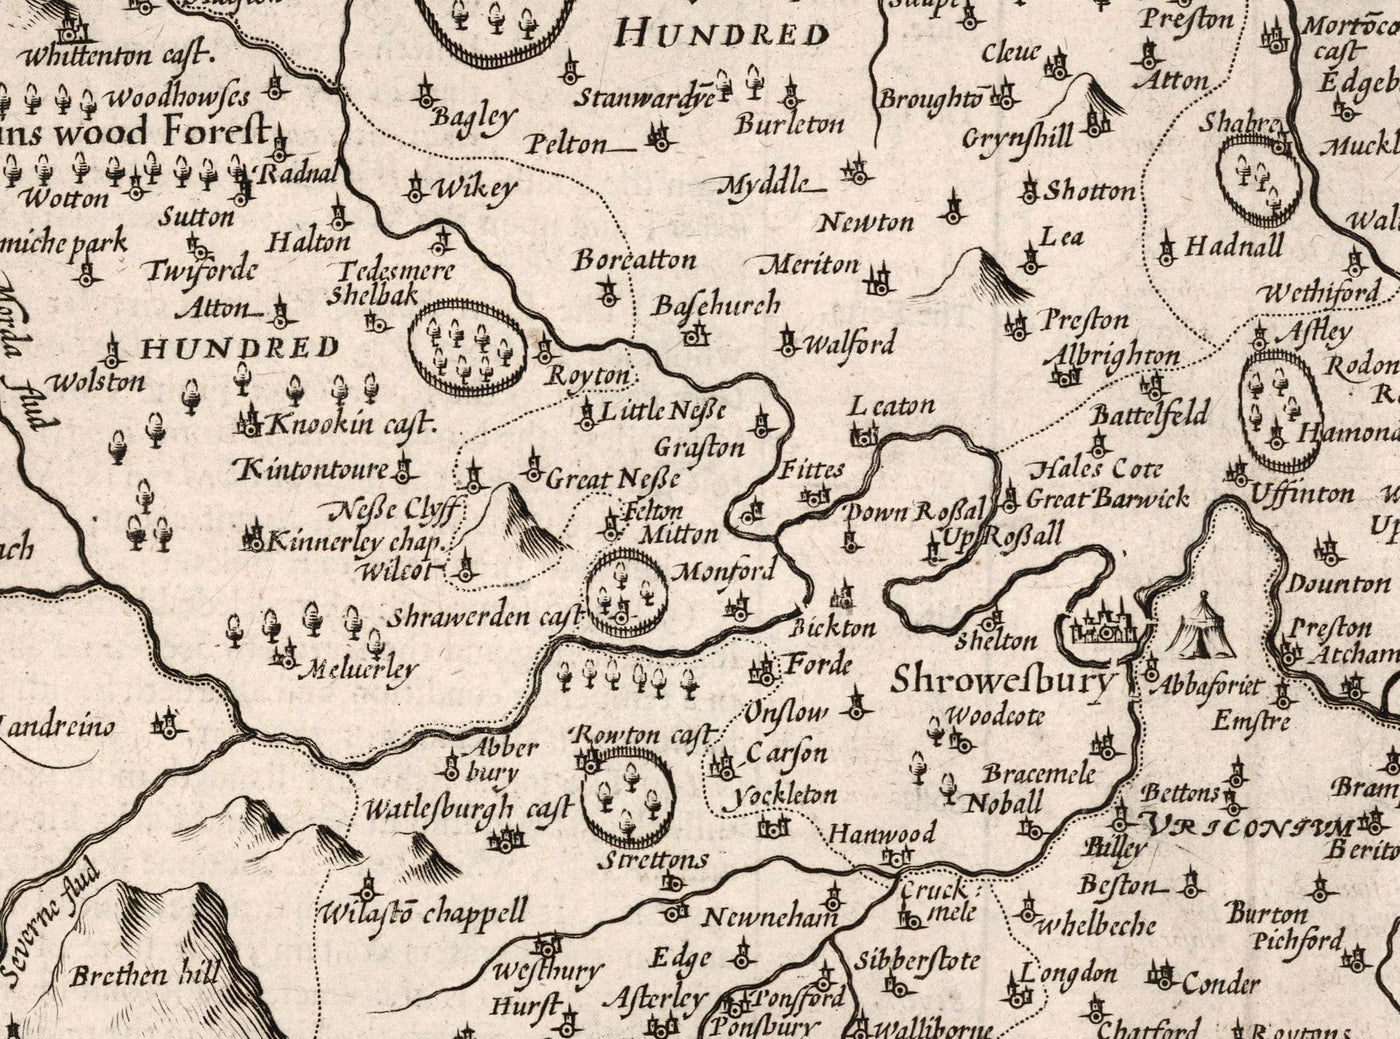 Alte Karte von Shropshire im Jahre 1611 von John Speed ​​- Shrewsbury, Telford, Bridgnorth, Oswestry, Newport, Ludlow